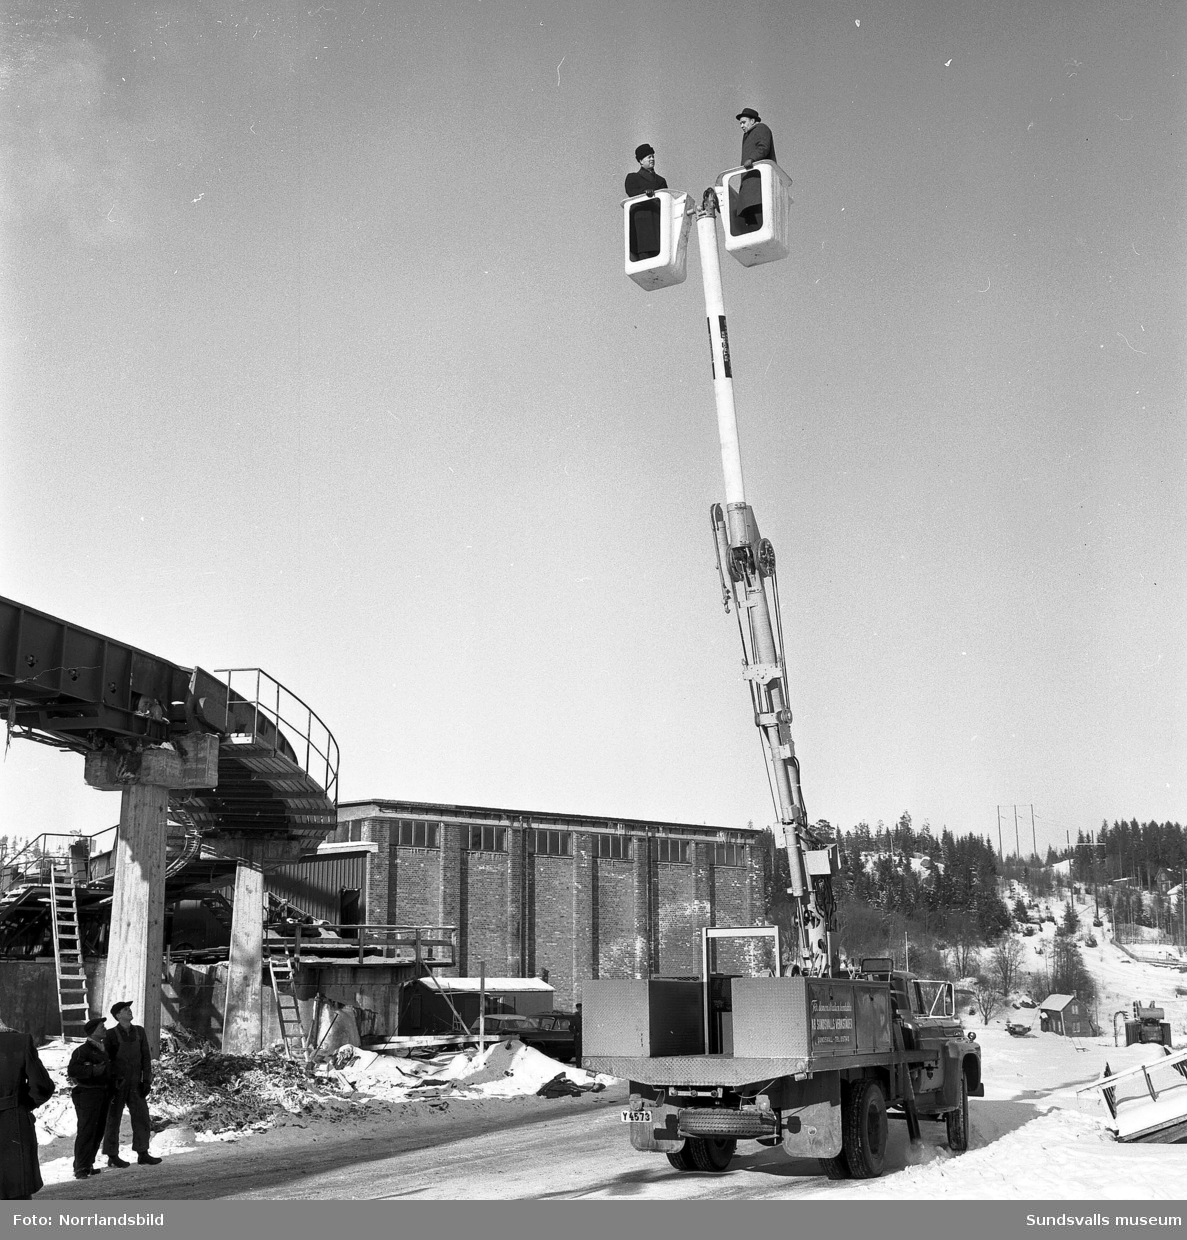 Skyworker, Pole King, en amerikans hydraulisk lyft som demonstreras av Sundsvalls verkstäder. Bilderna är tagna i bland annat Högom, där gammal bebyggelse syns i bakgrunden. En av bilderna är fotograferad i hamnen upp mot Skönsberg.